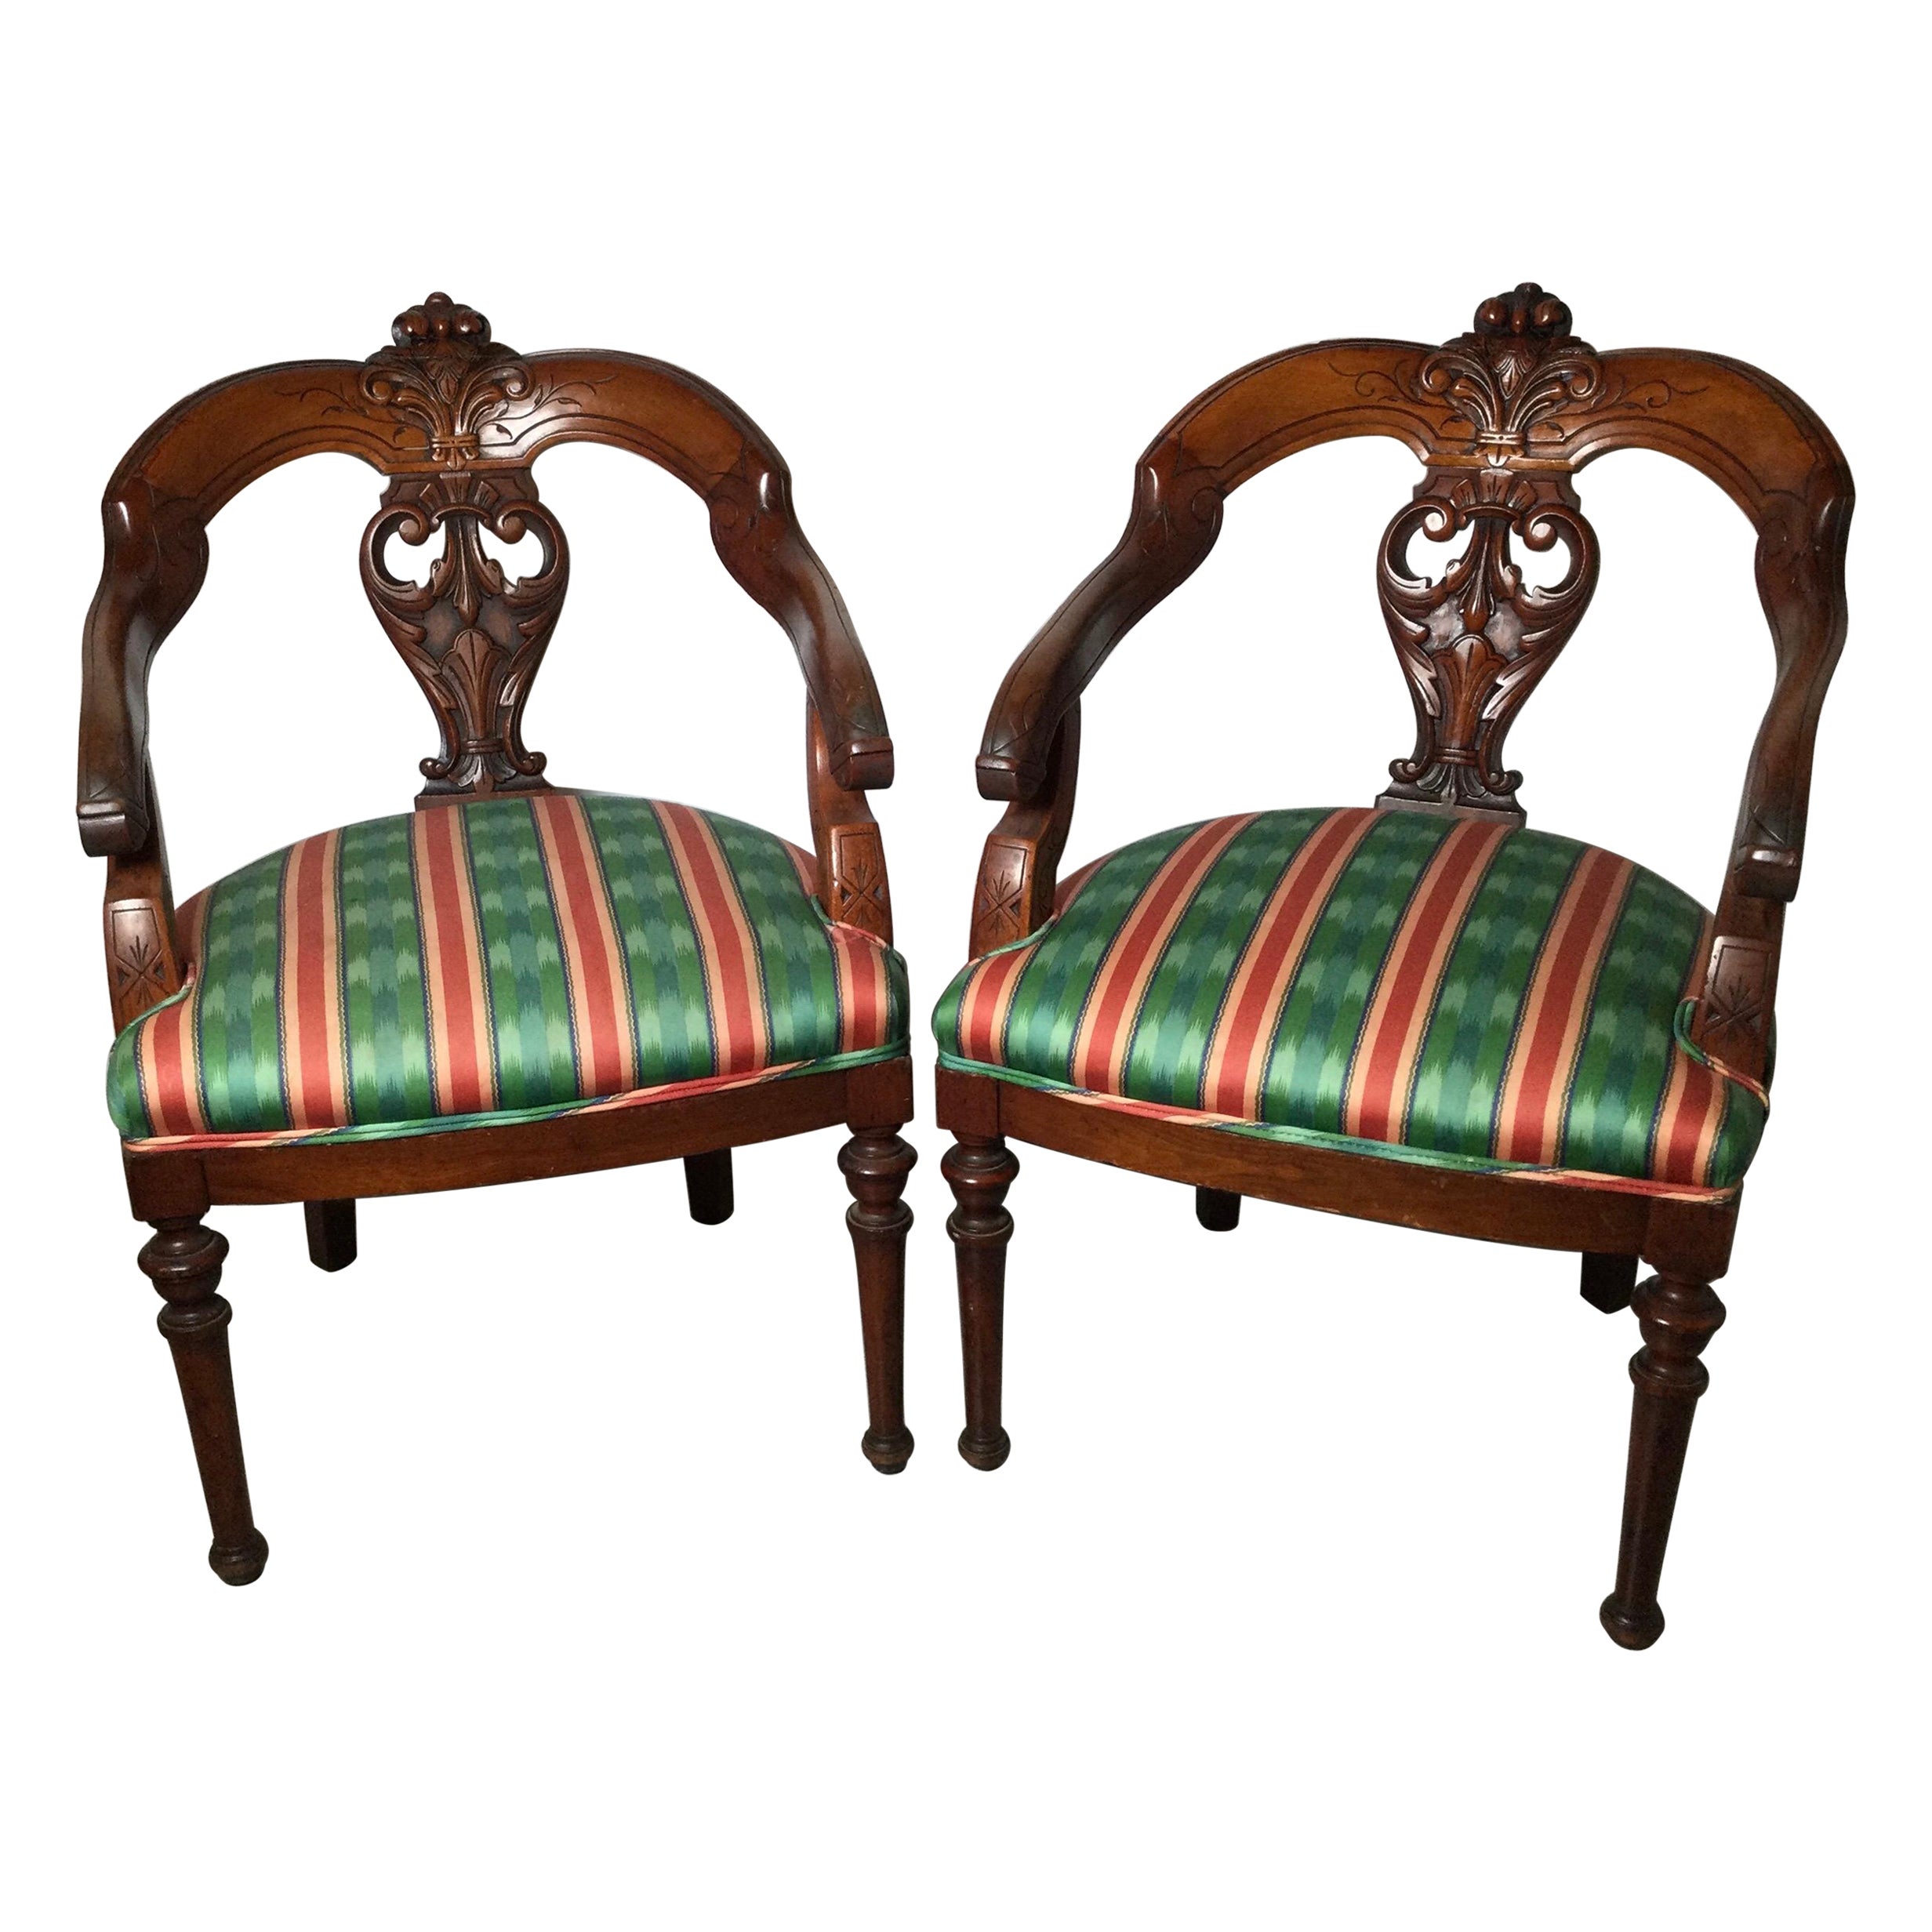 Paar handgeschnitzte Sessel mit geschwungener Rückenlehne aus Nussbaumholz, 19. Jahrhundert